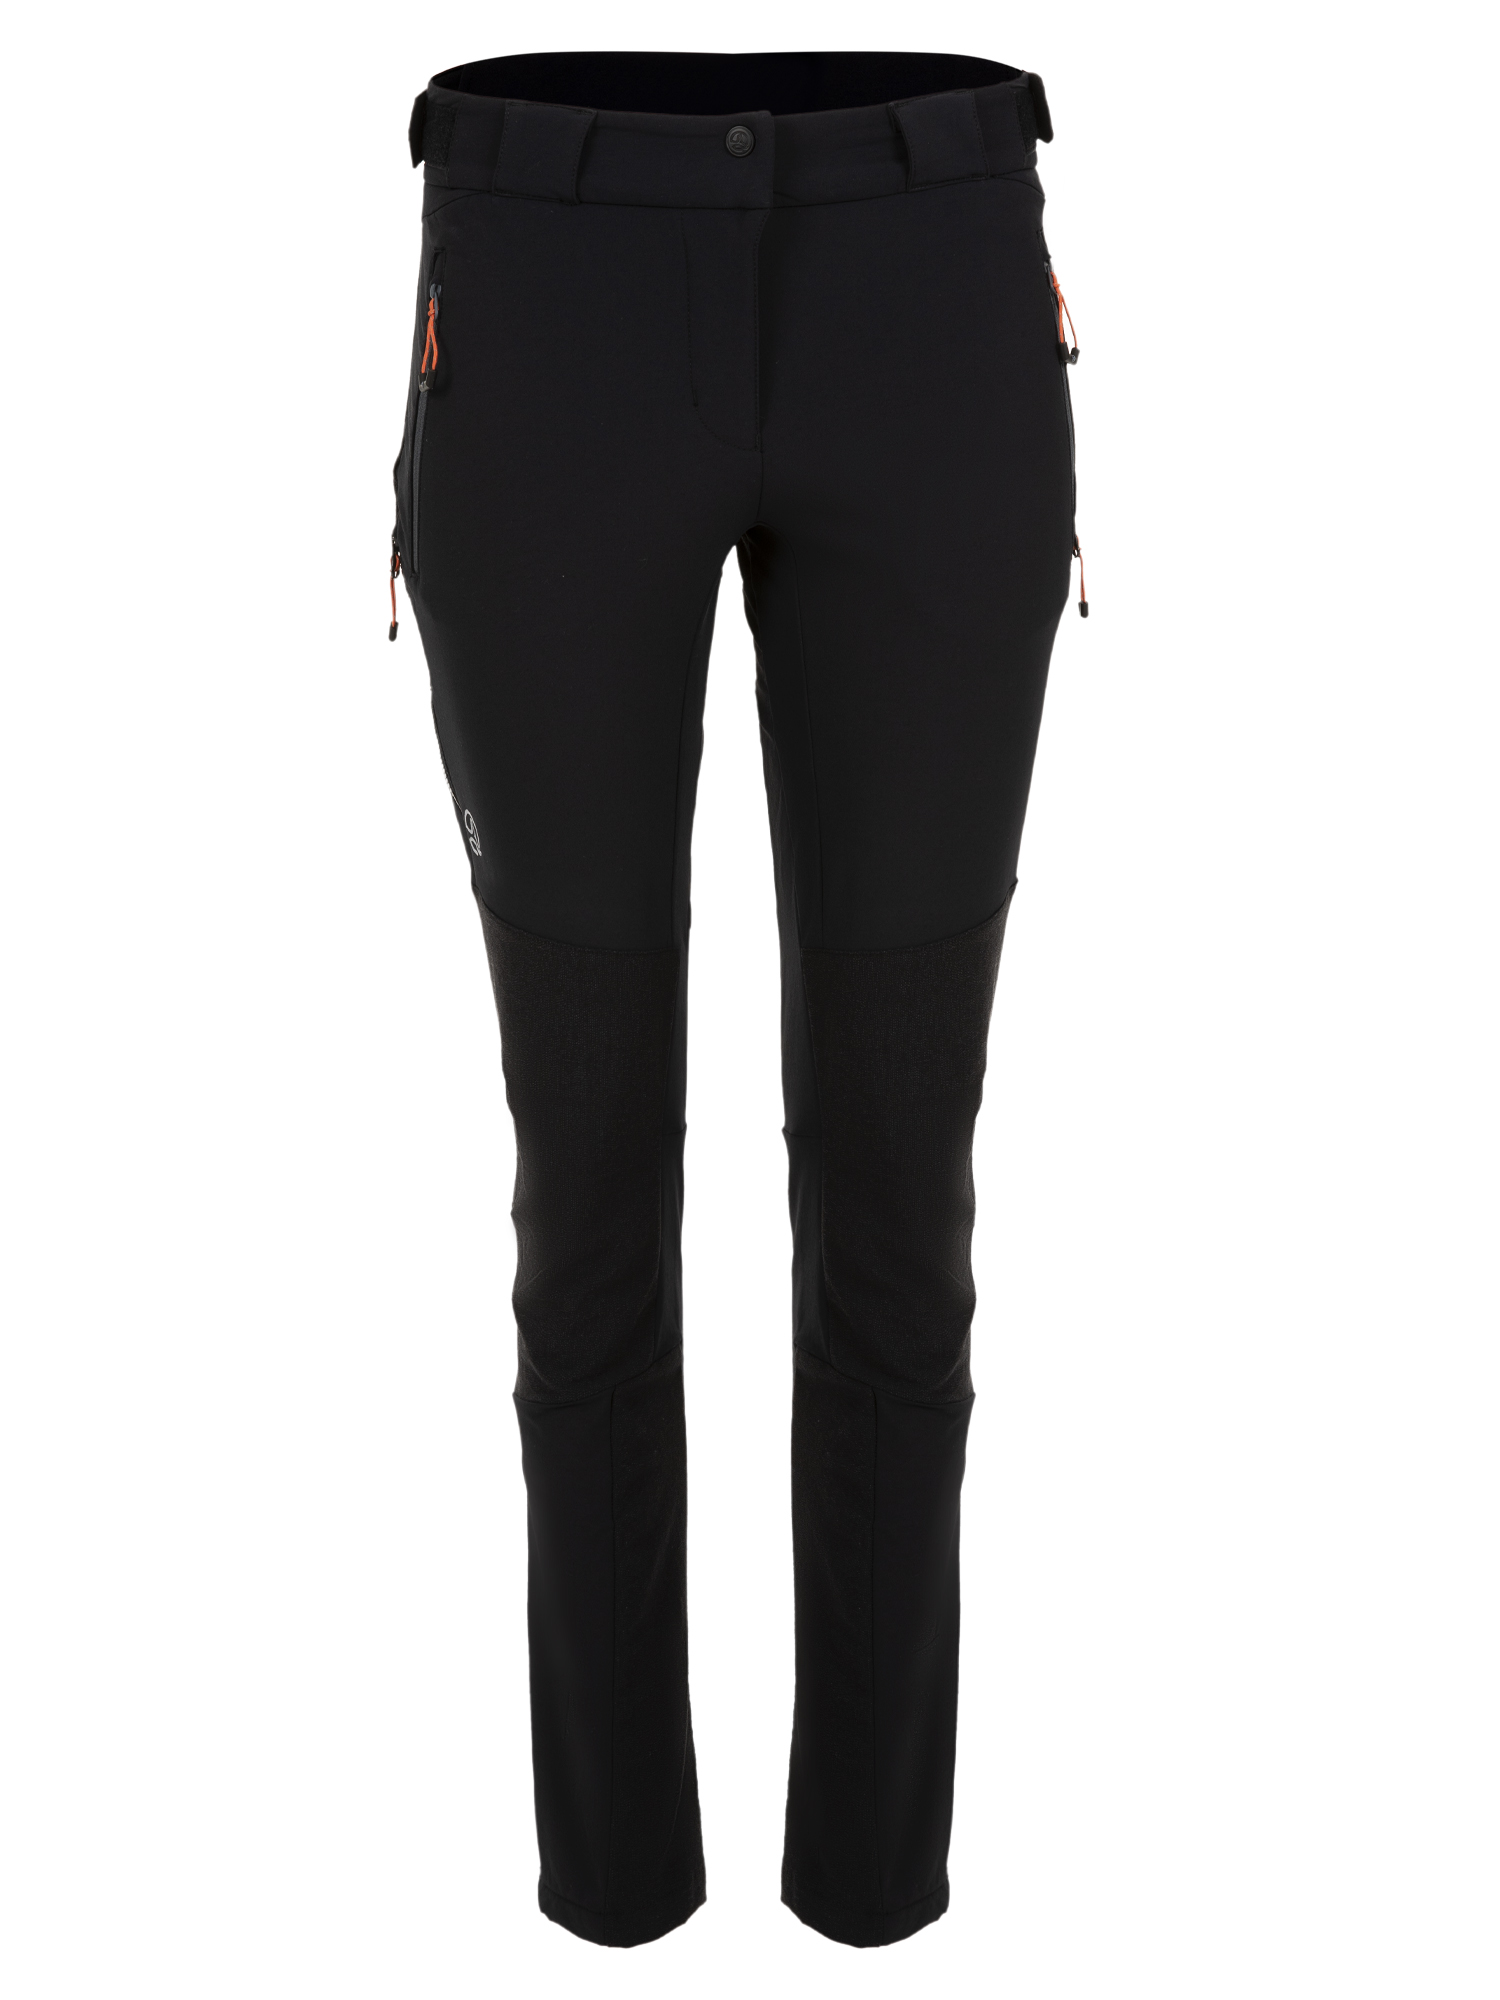 Спортивные брюки женские Ternua Elbrus Pt W черные XL